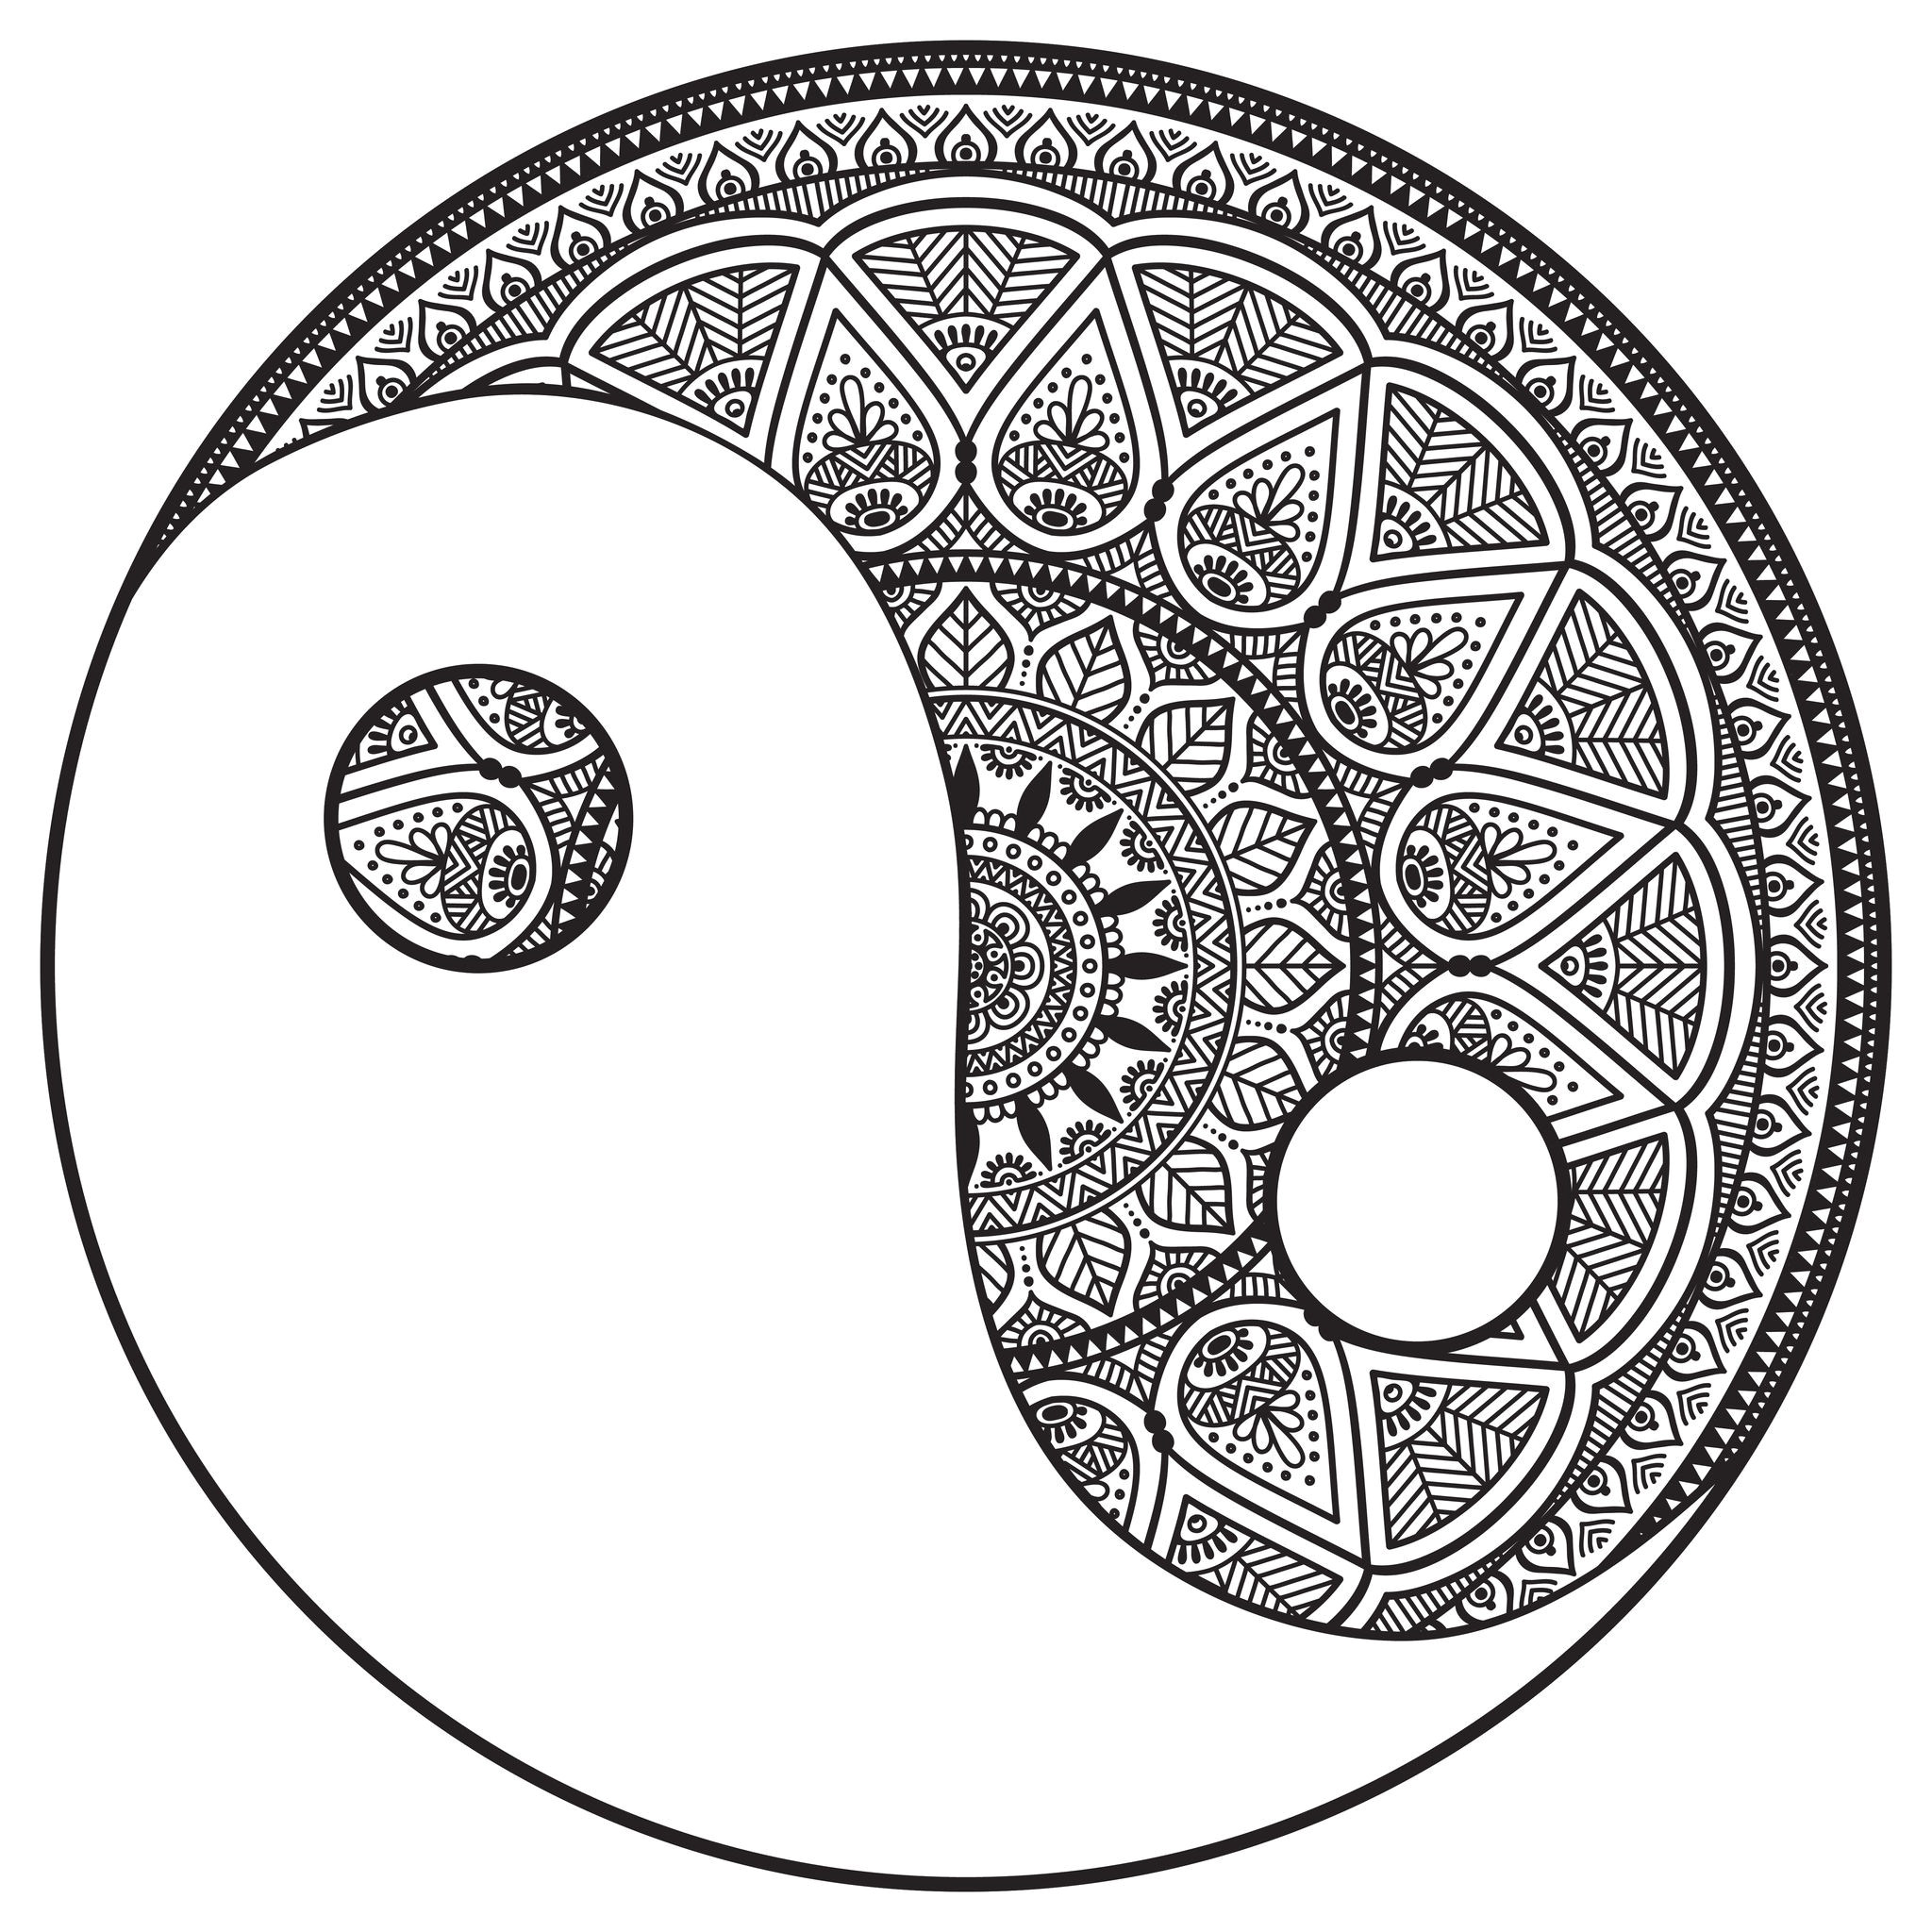 coloriage yin yang einzigartig mandala yin yang a imprimer frisch 11 beau de mandalas image of coloriage yin yang